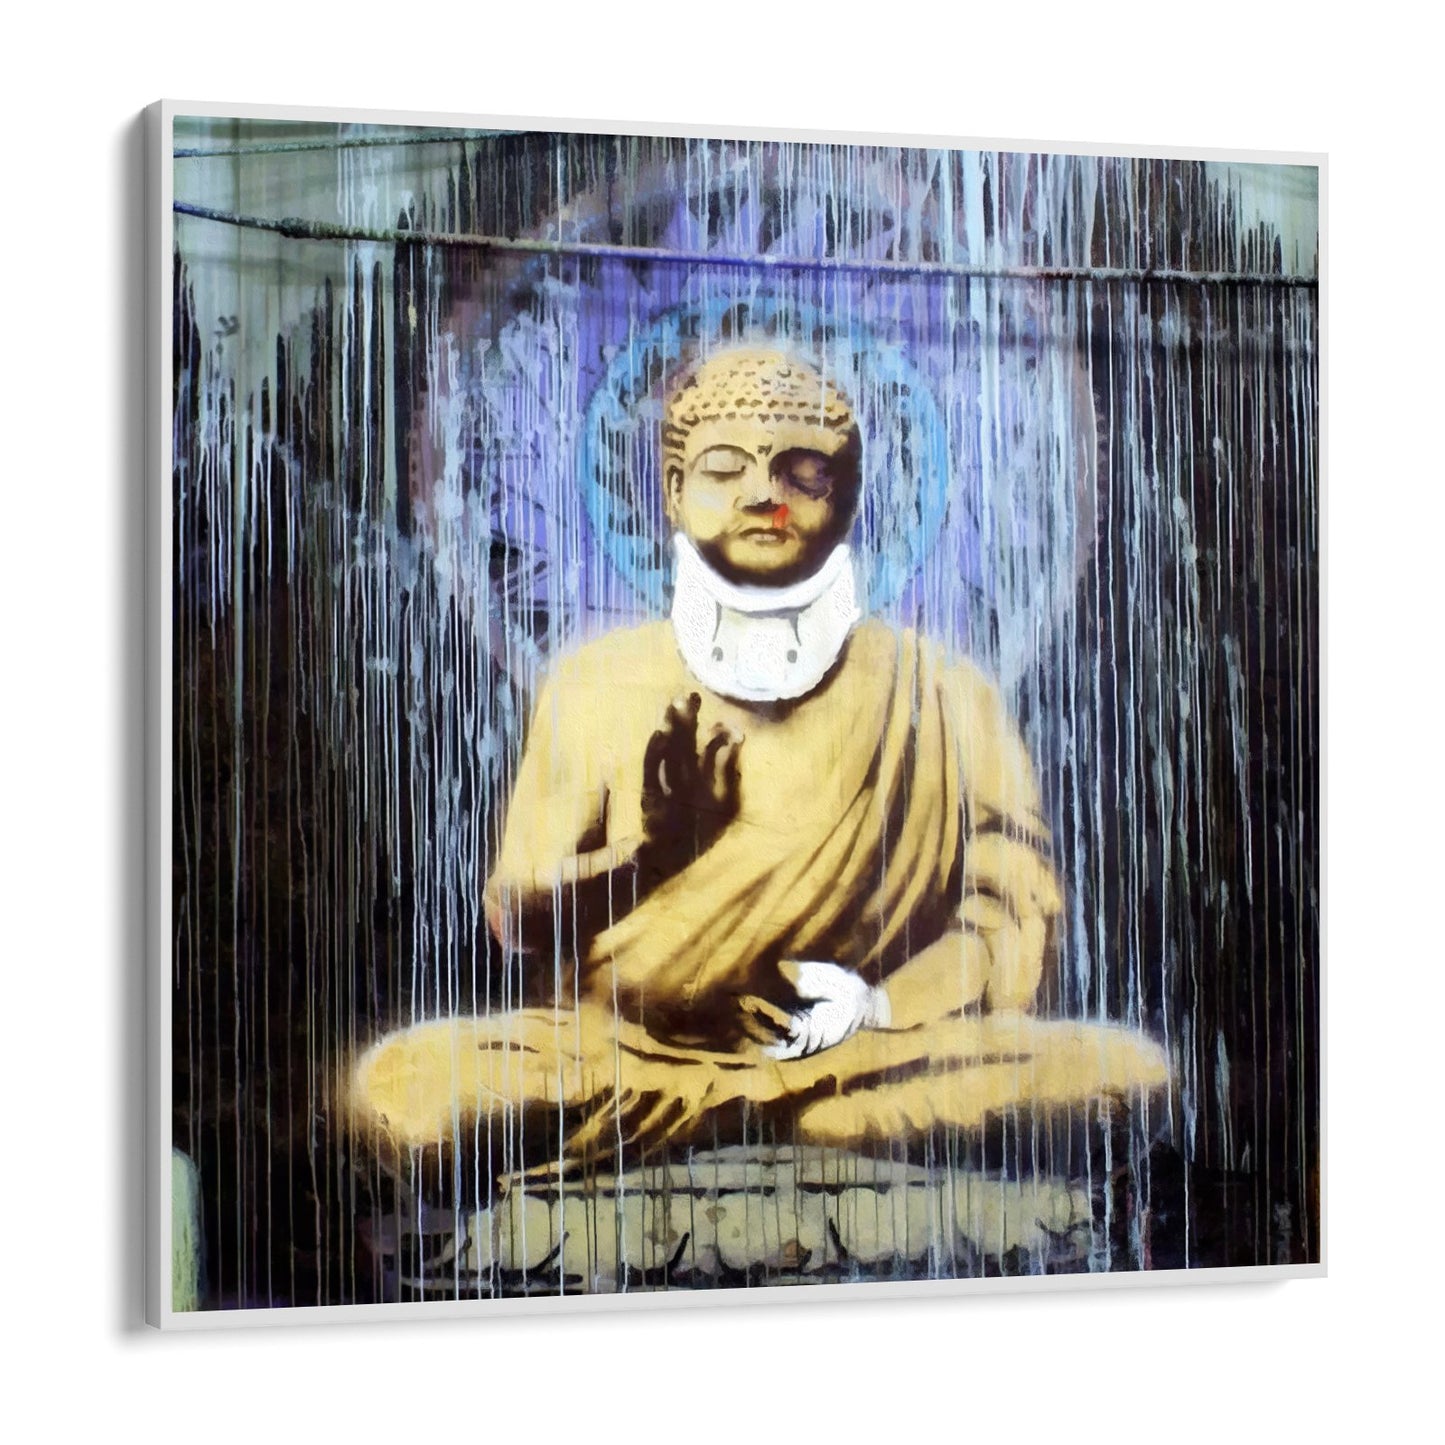 Sérült Buddha, Banksy